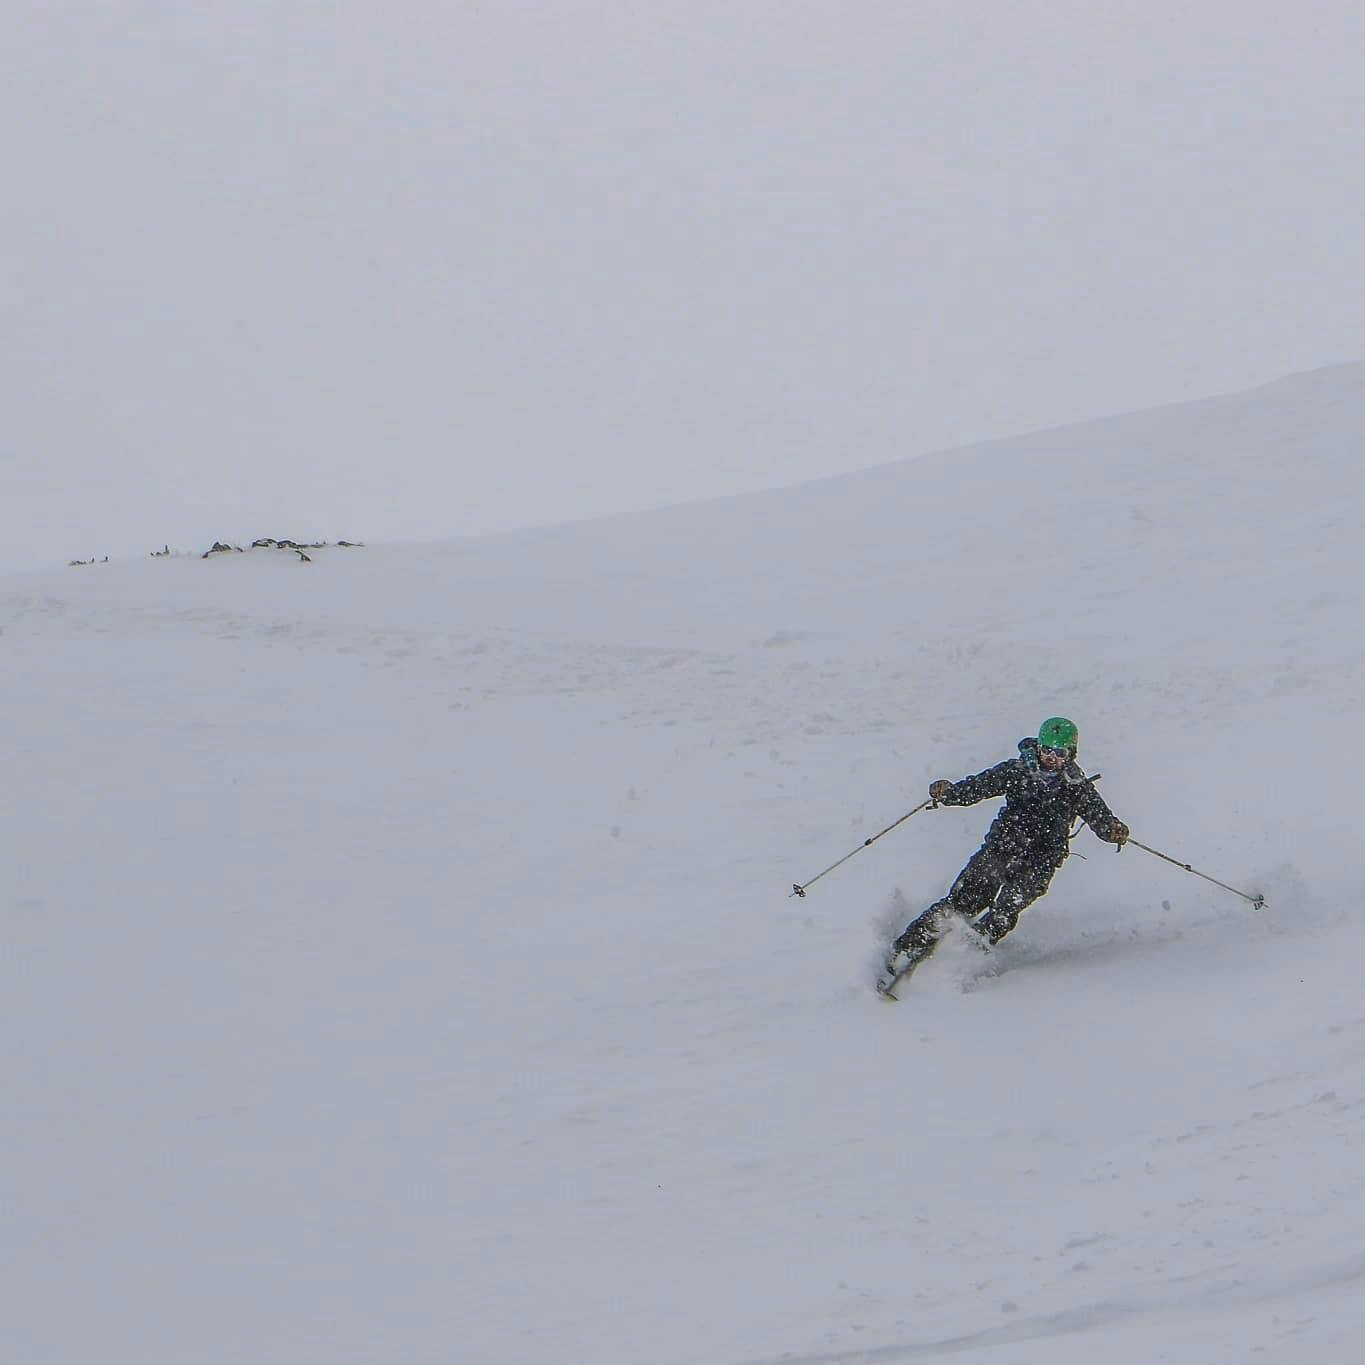 A skier on the Salomon MTN explore skis.